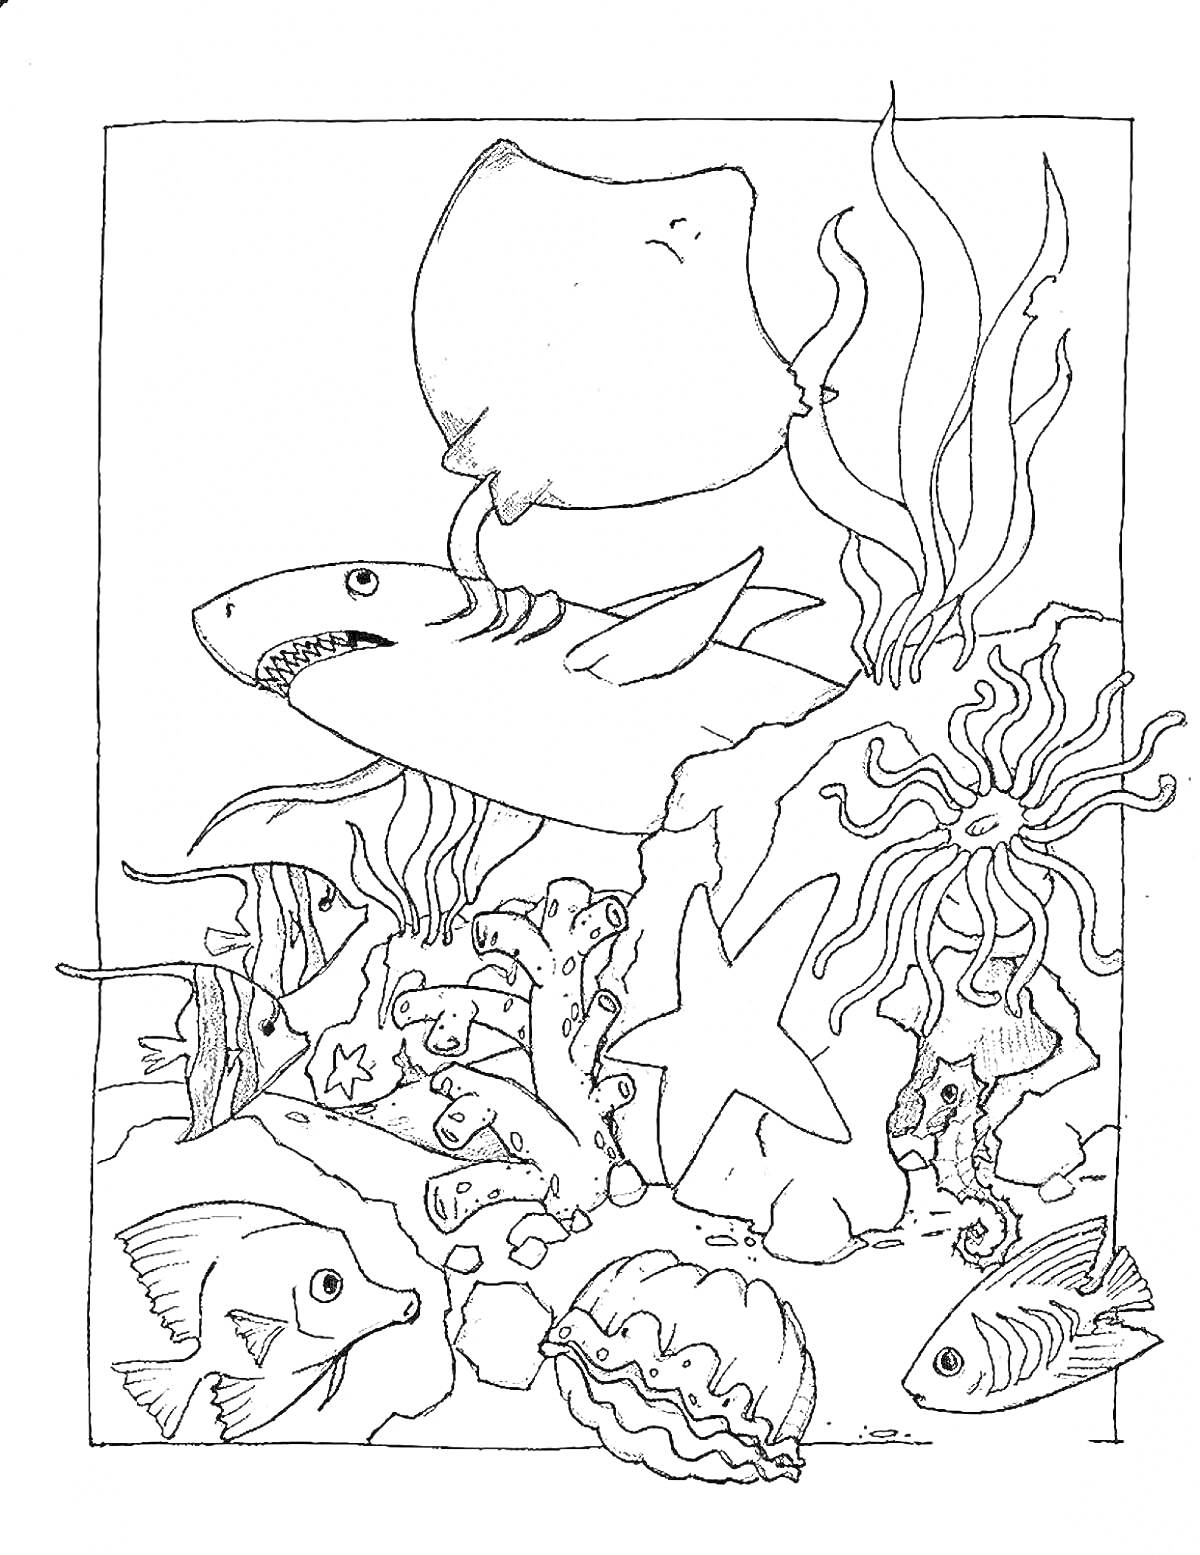 Раскраска Подводная сцена с акулой, медузой, рыбами, осьминогом, кораллами и морской звездой